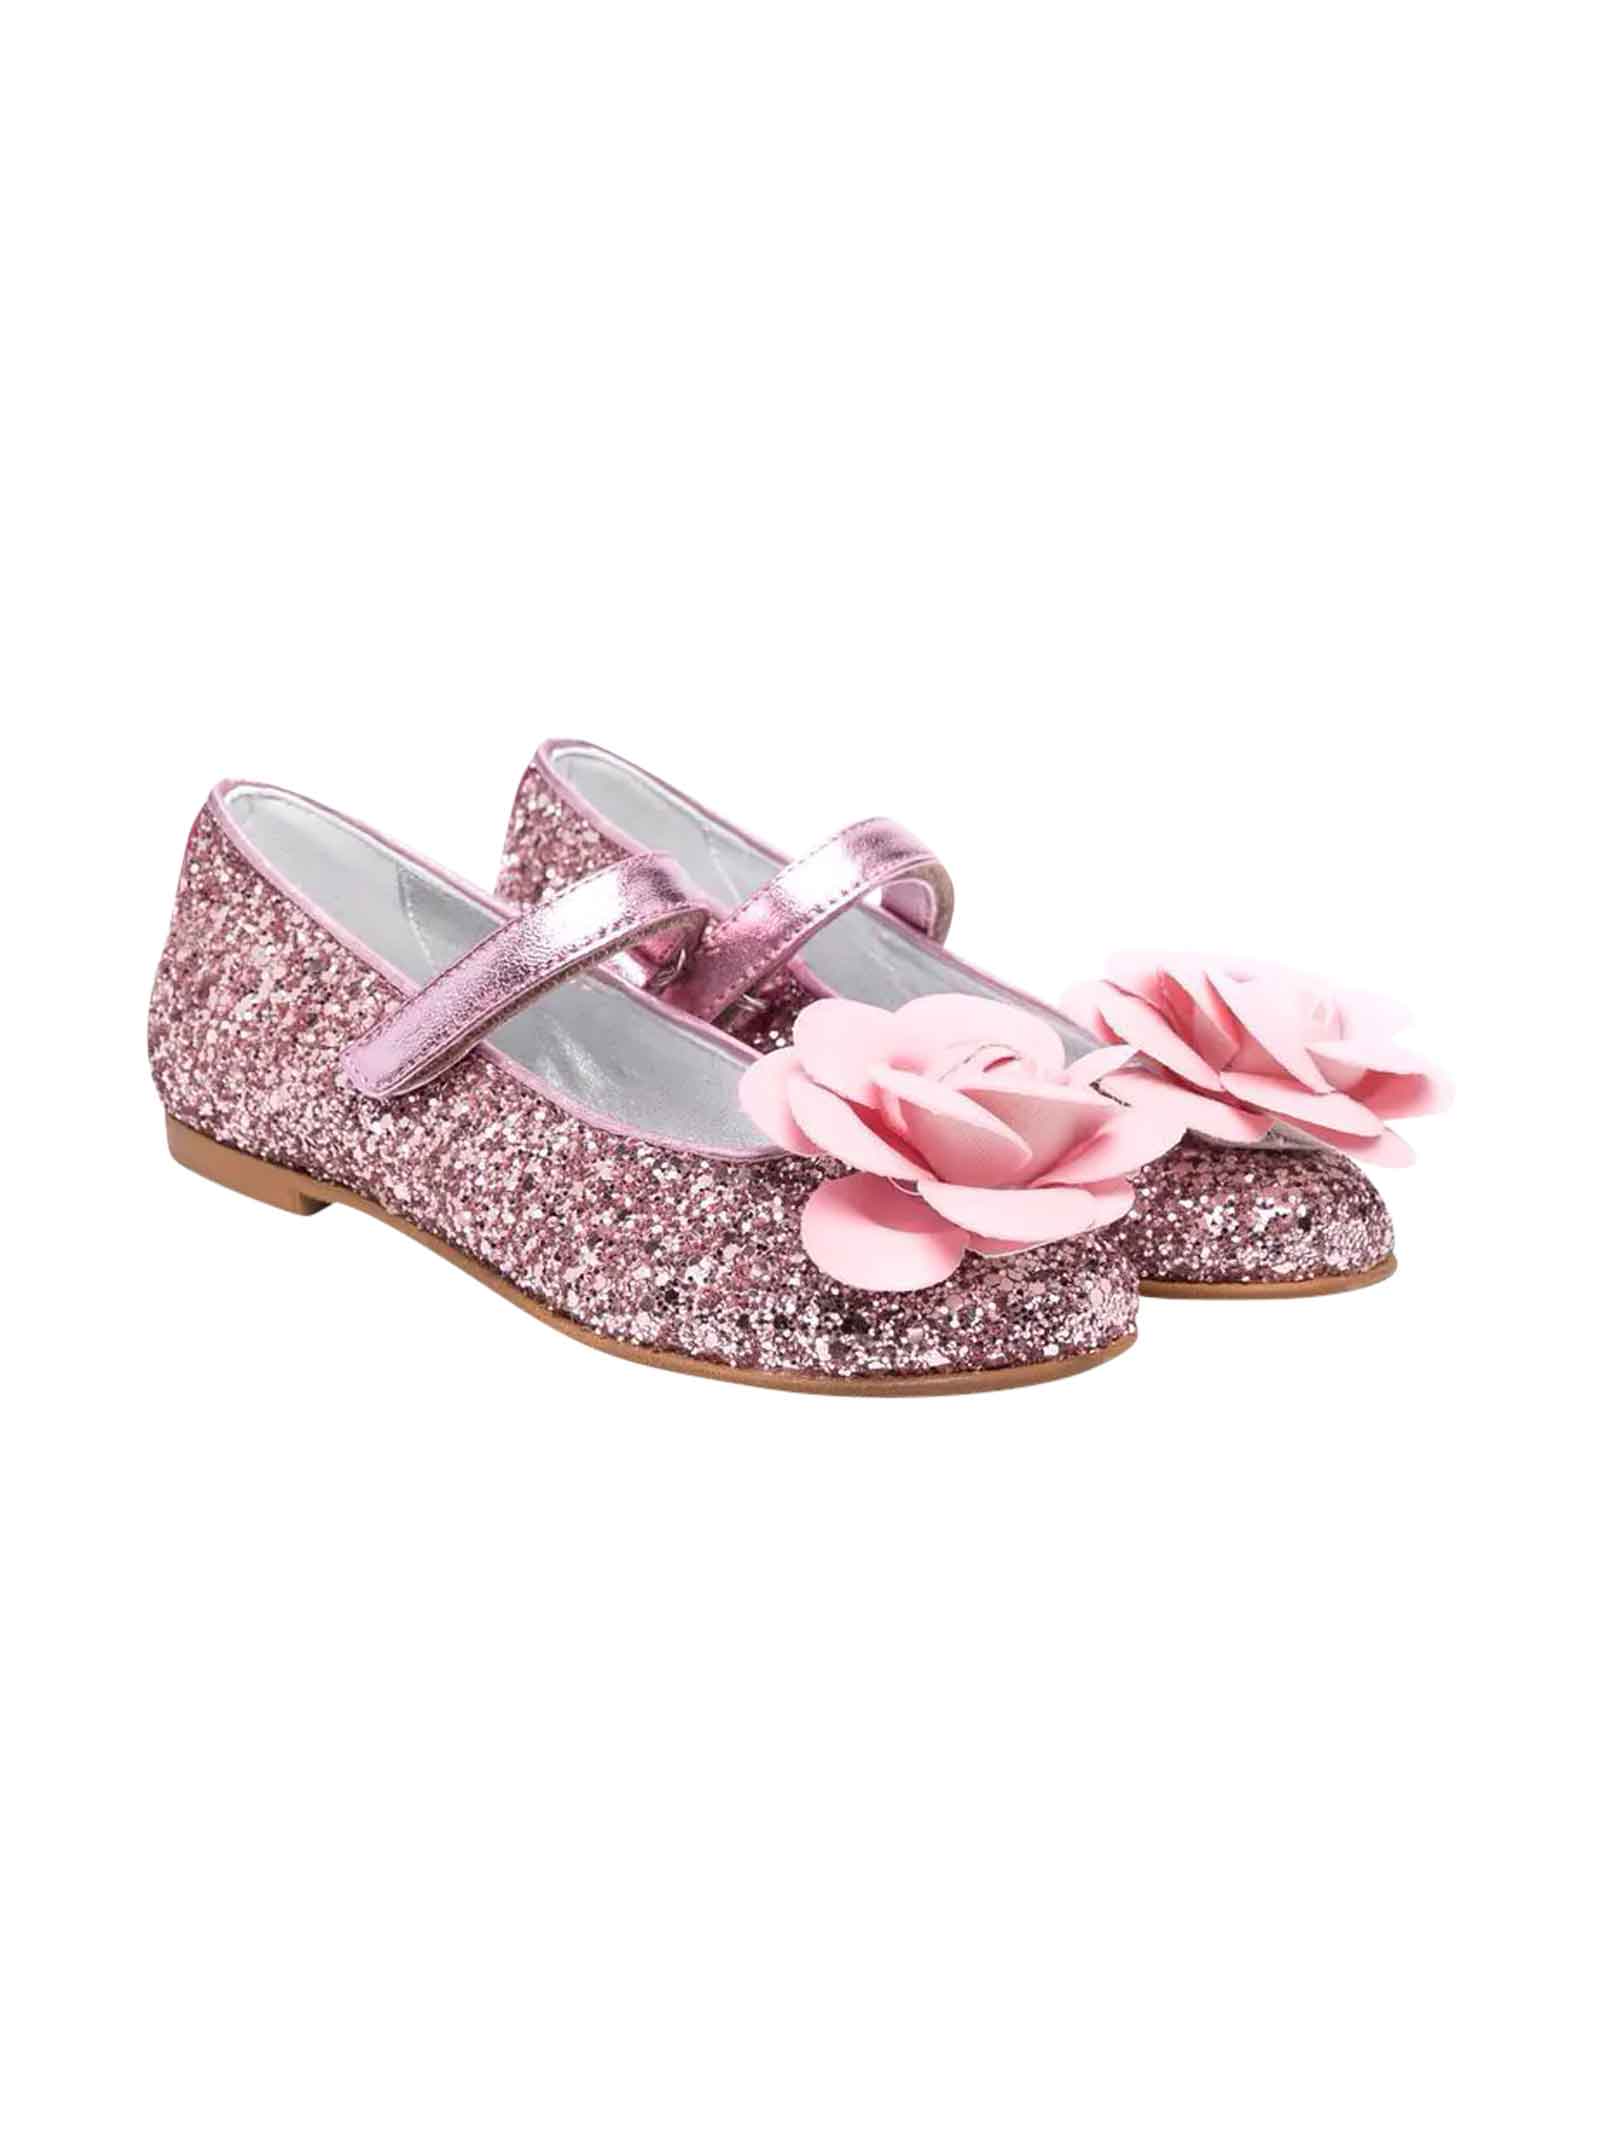 Monnalisa Pink Glitter Girl Ballet Flats.